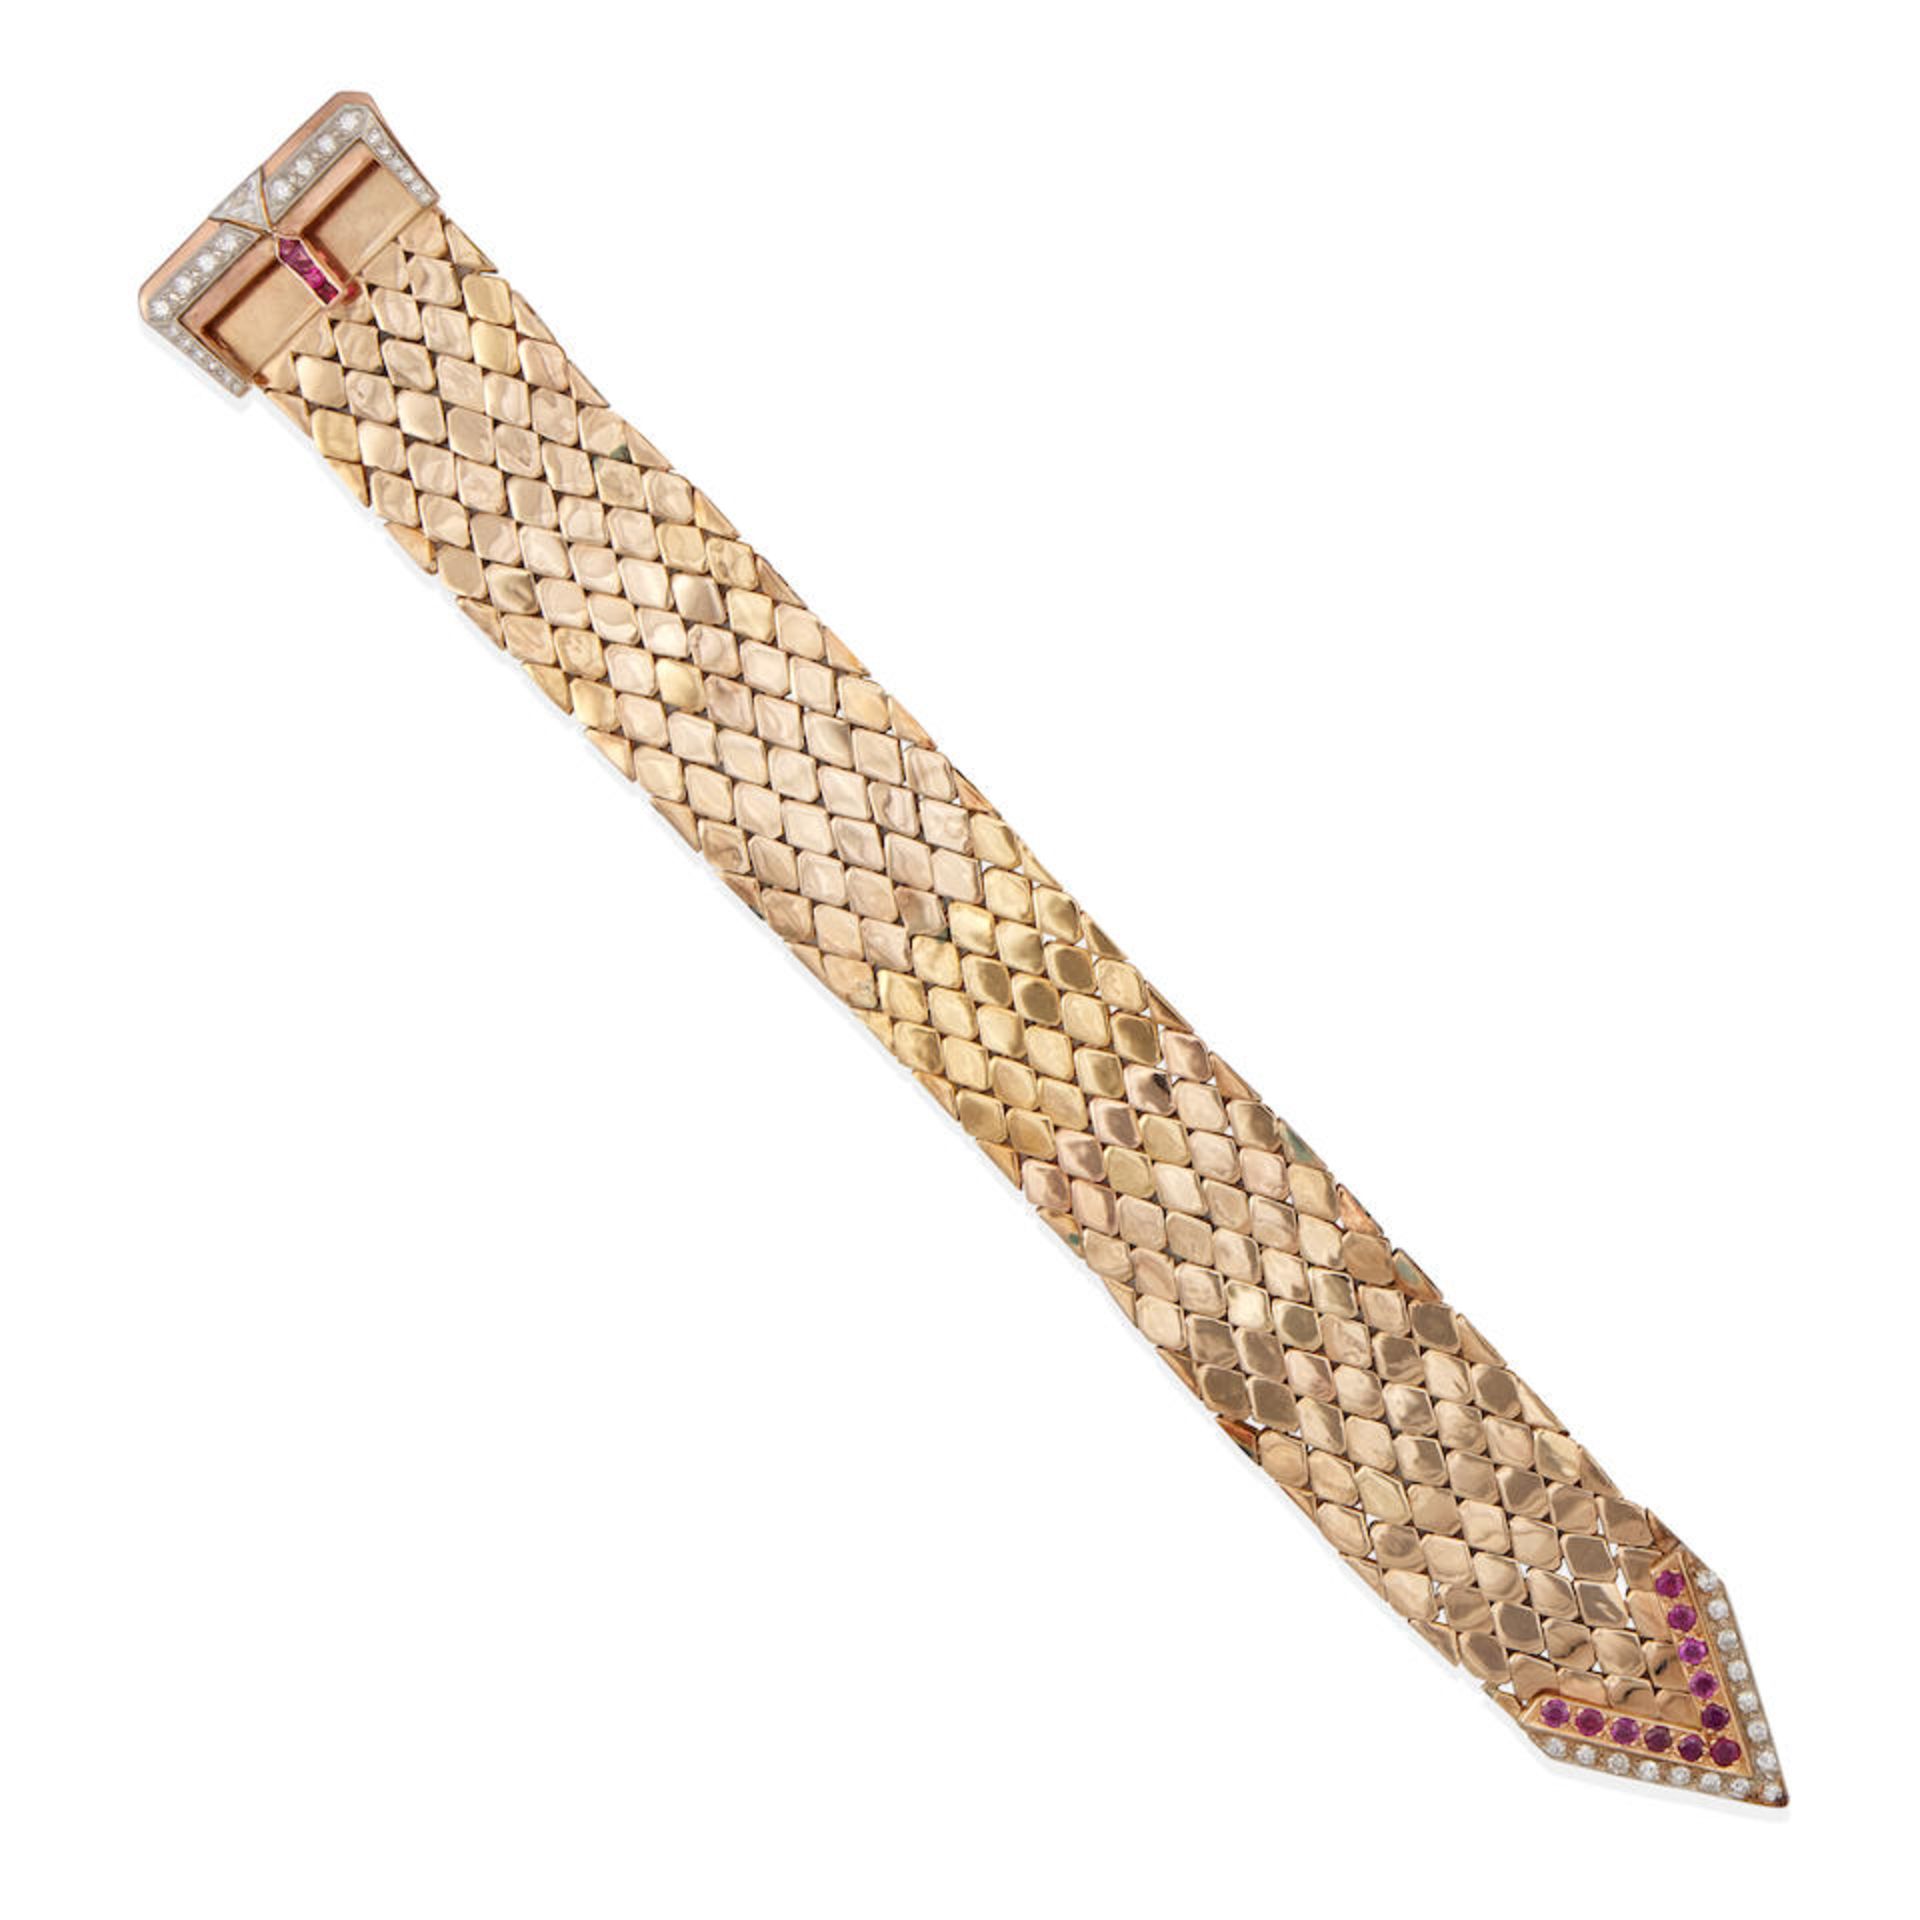 A 14K BI-COLOR GOLD, RUBY AND DIAMOND BRACELET - Image 2 of 2